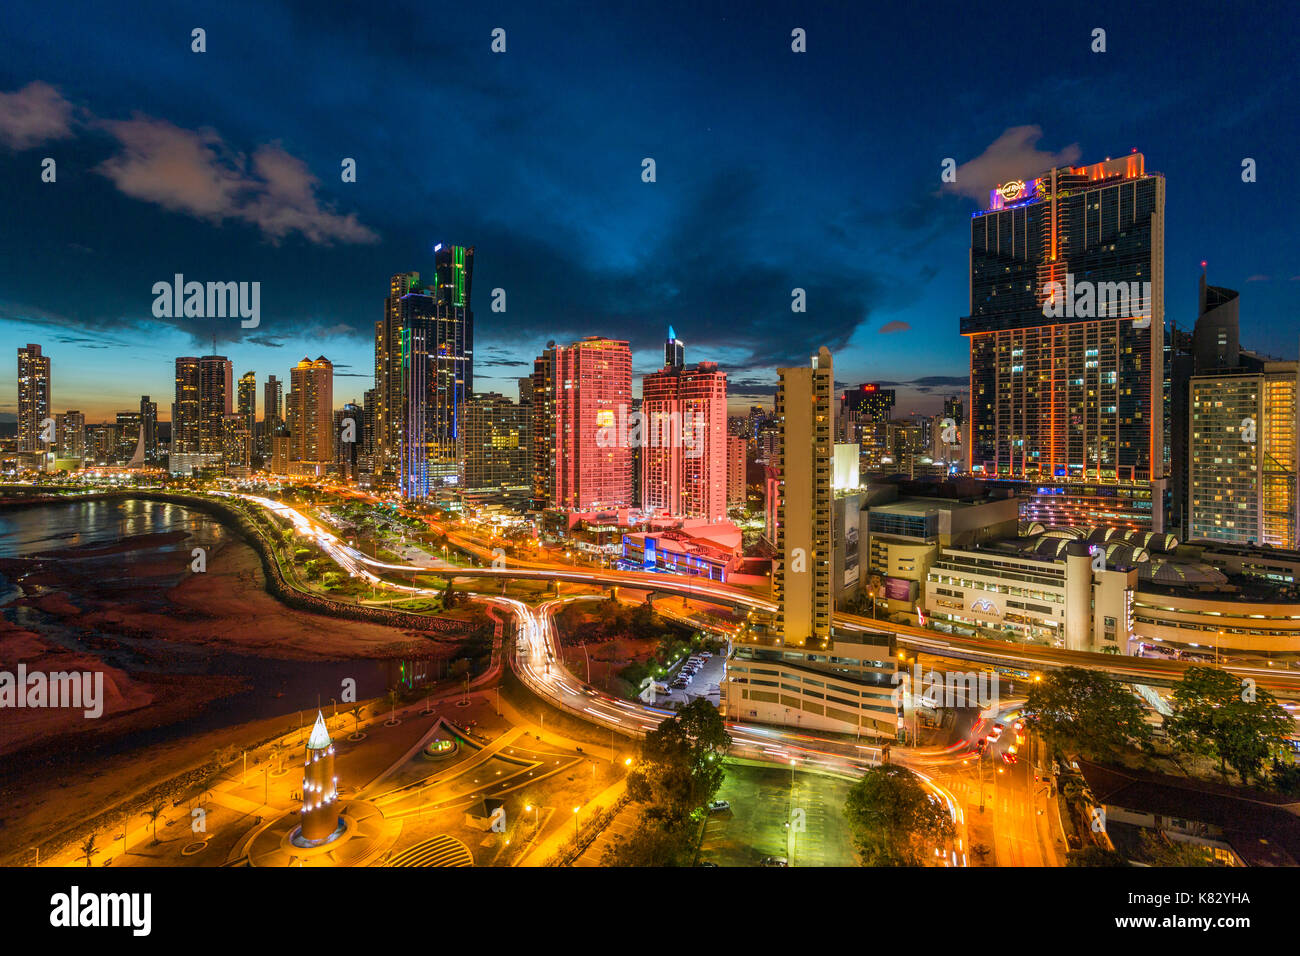 City skyline illuminated at dusk, Panama City, Panama, Central America Stock Photo